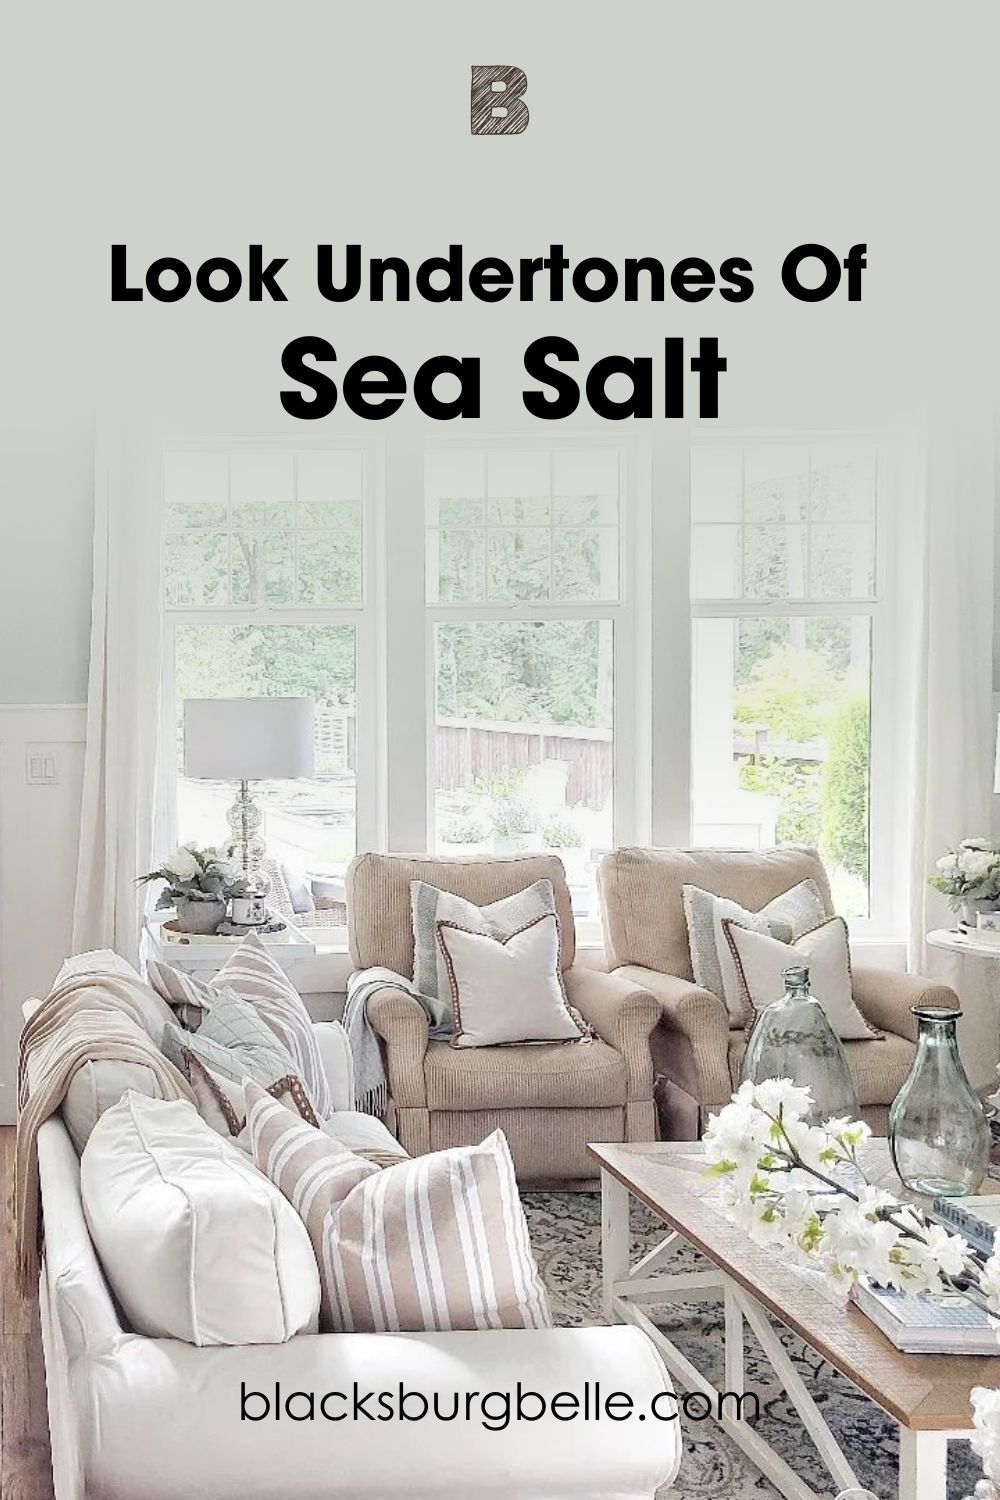 A Closer Look at Sea Salt Undertones